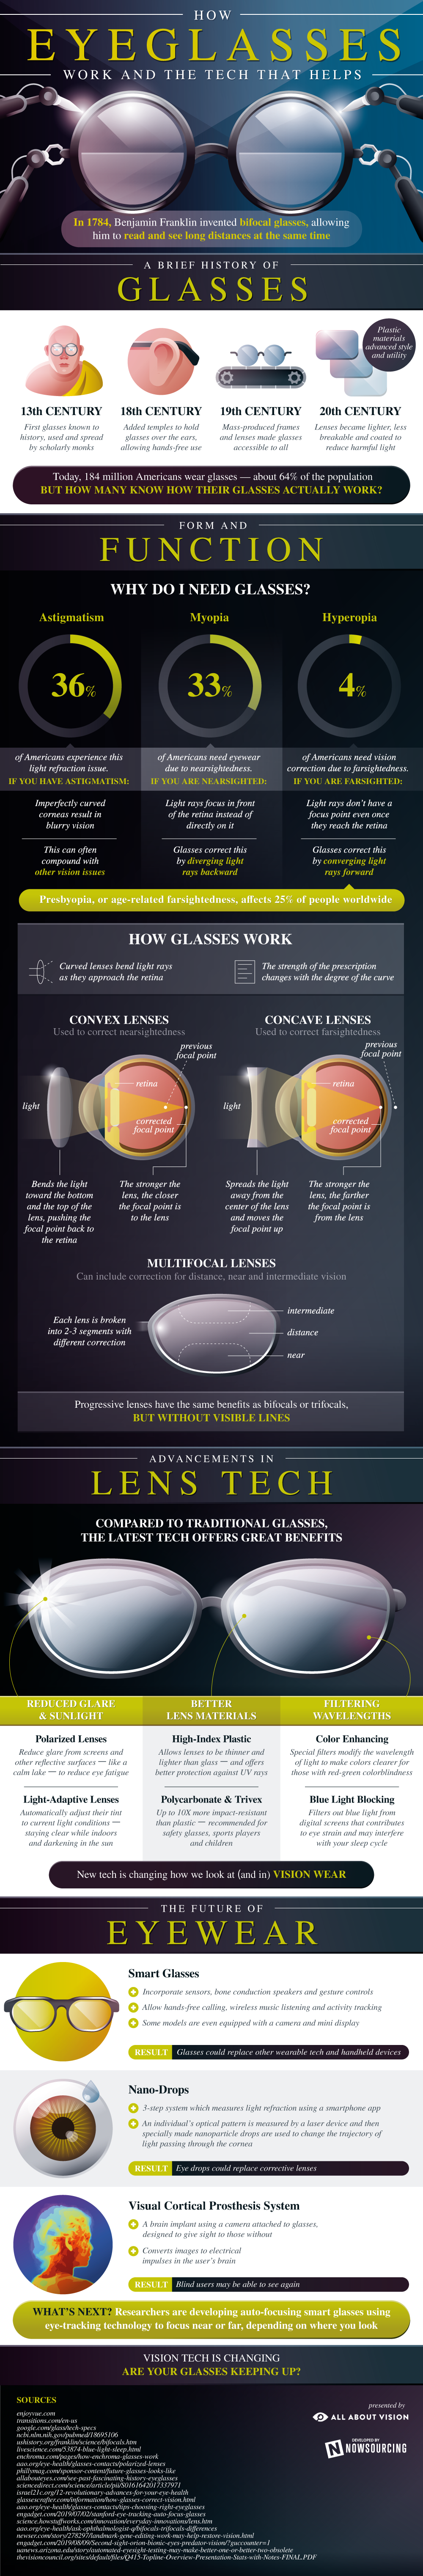 How eyeglasses work